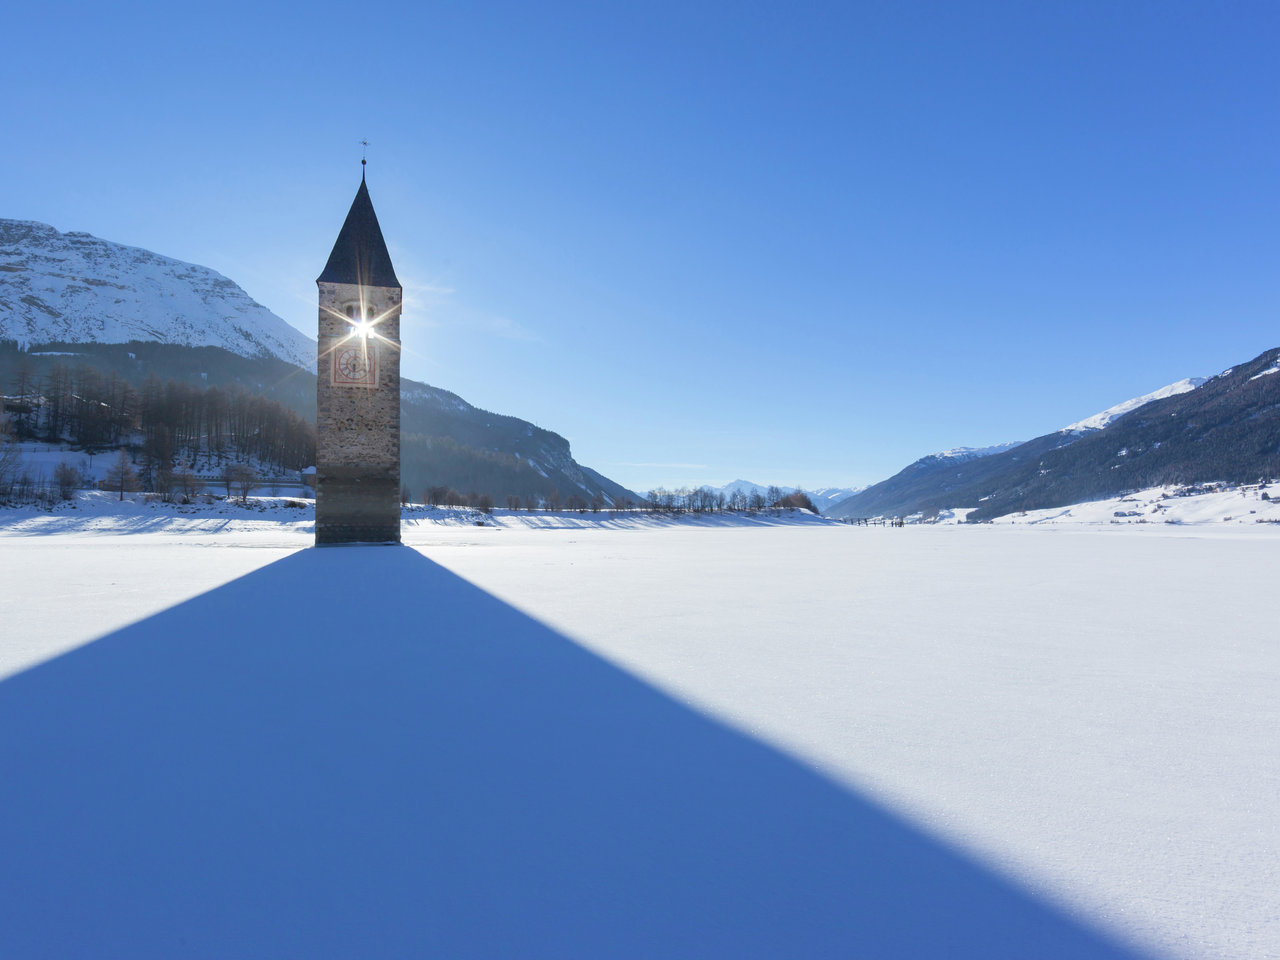 Il campanile sommerso nel Lago di Resia, vicino al Passo Resia, è oggi il simbolo della Val Venosta.